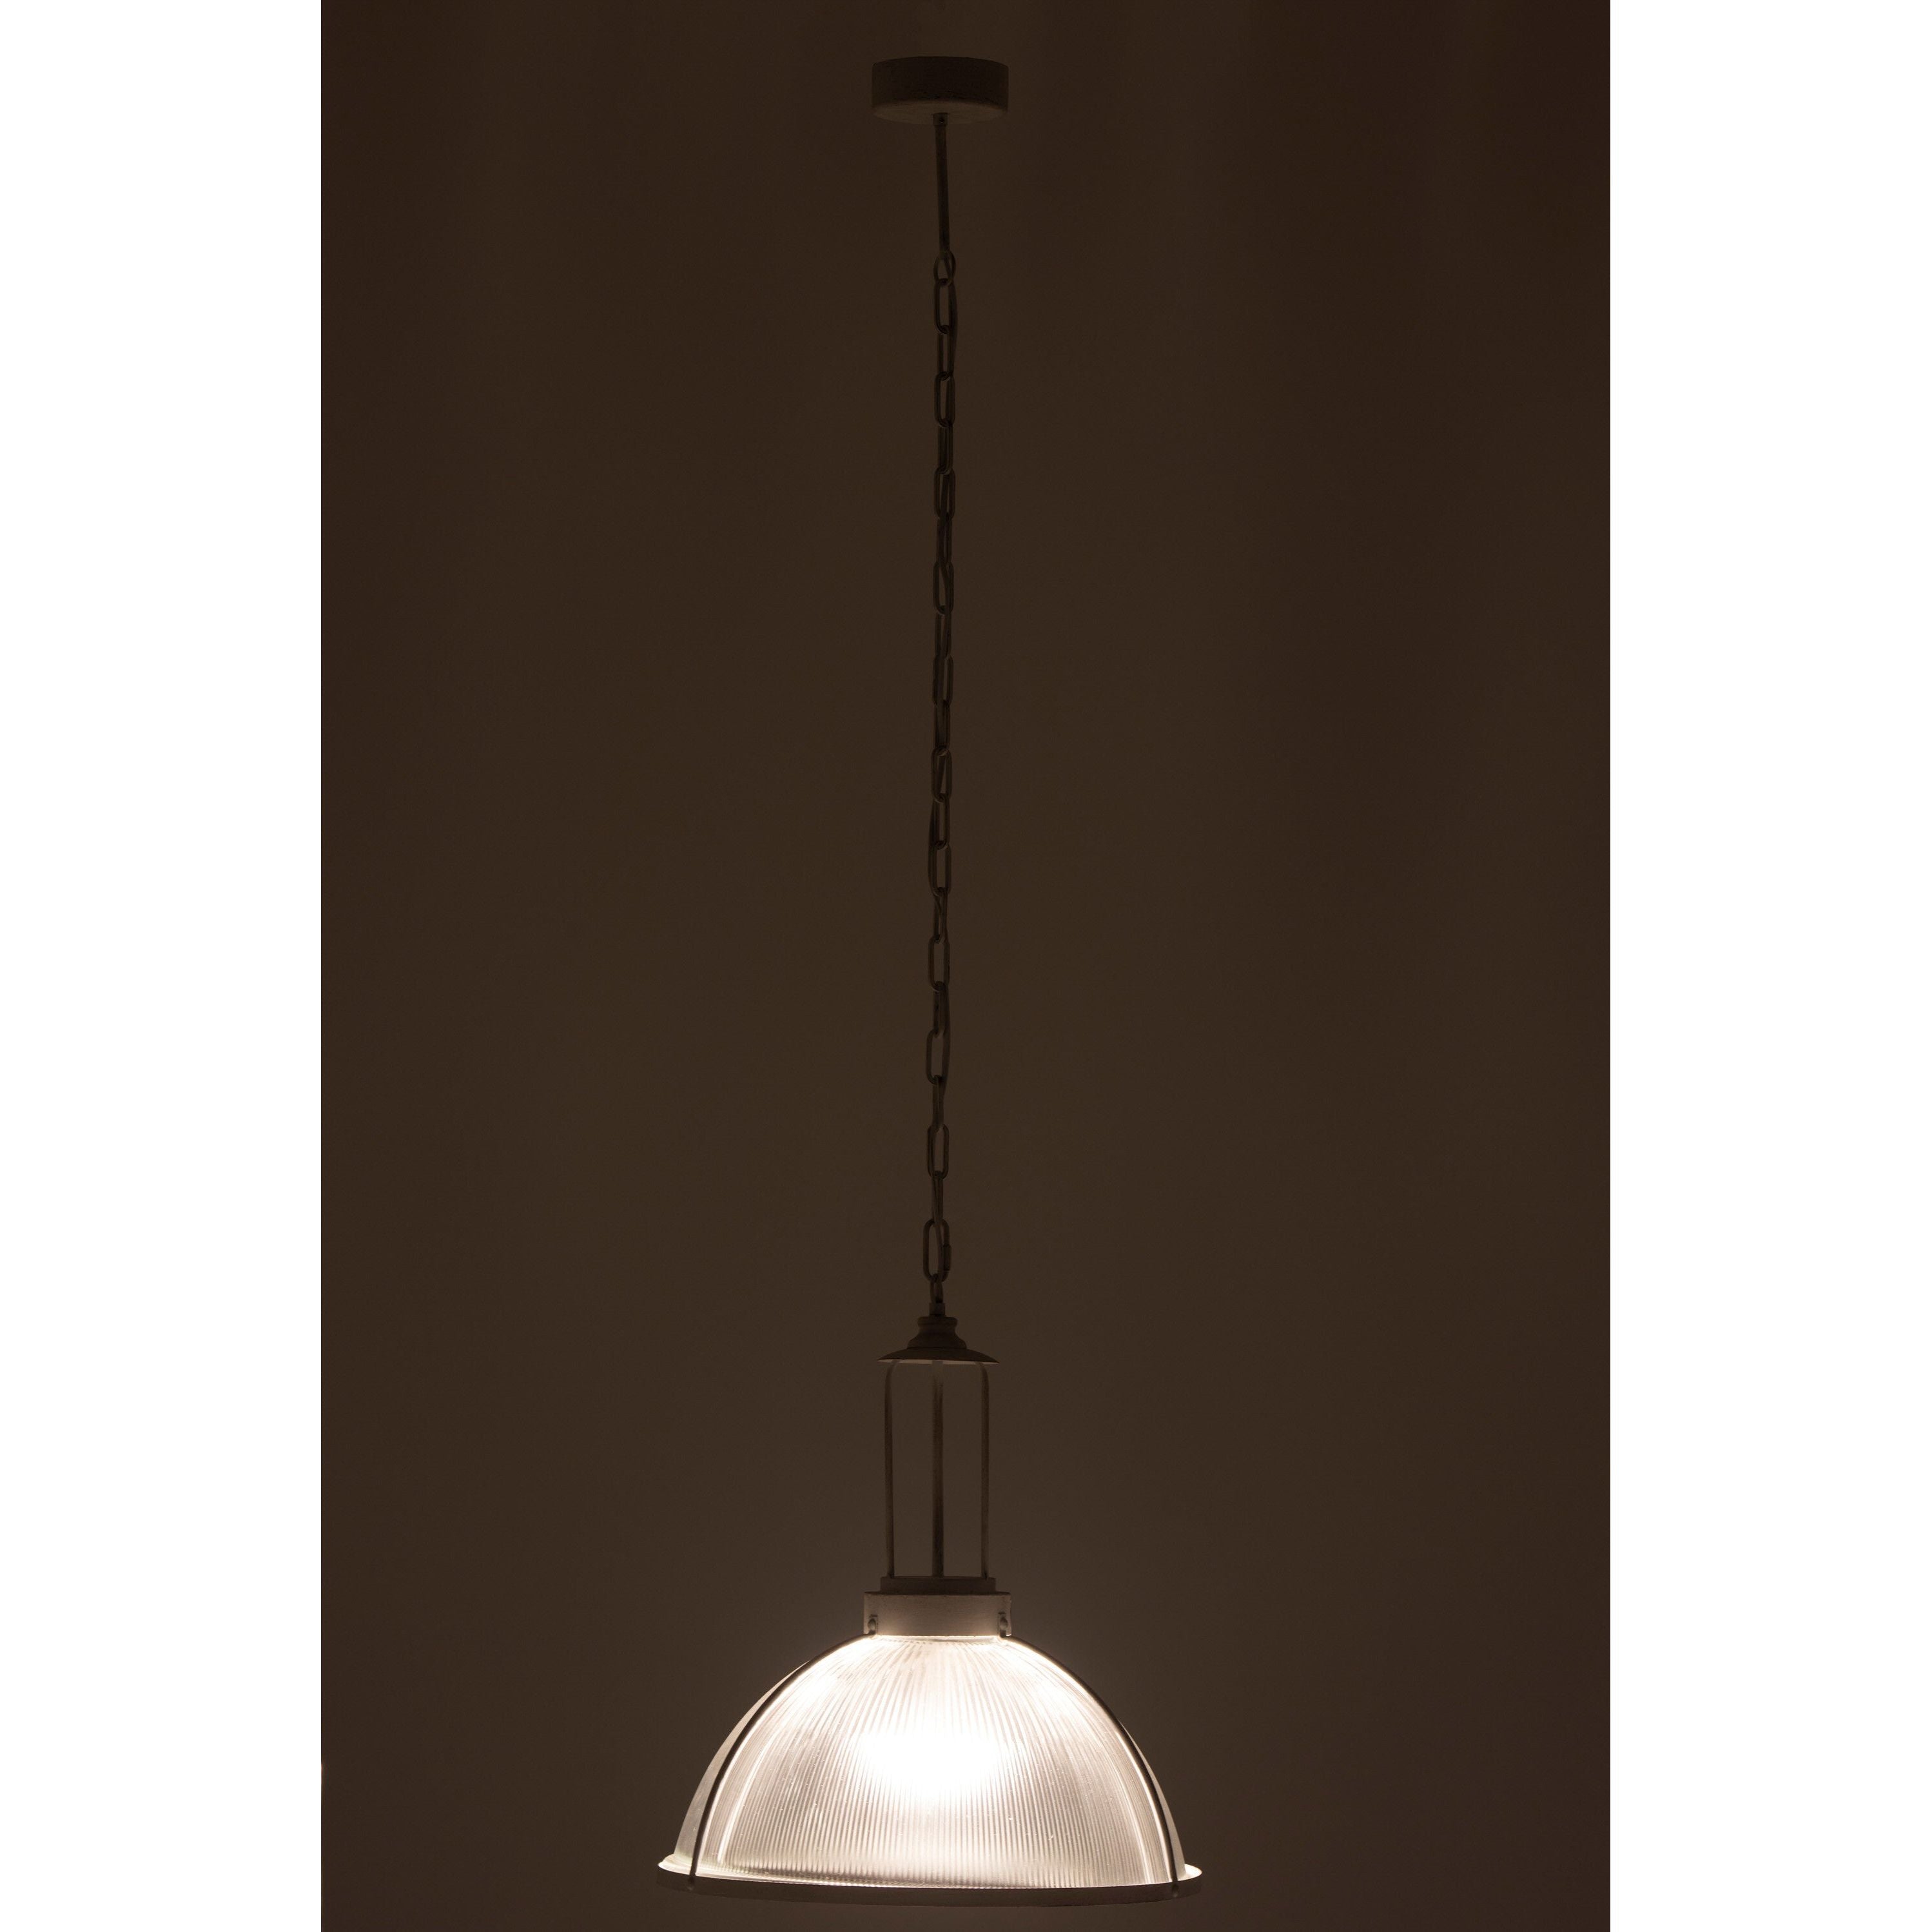 Hanging lamp Round Glass/metal White